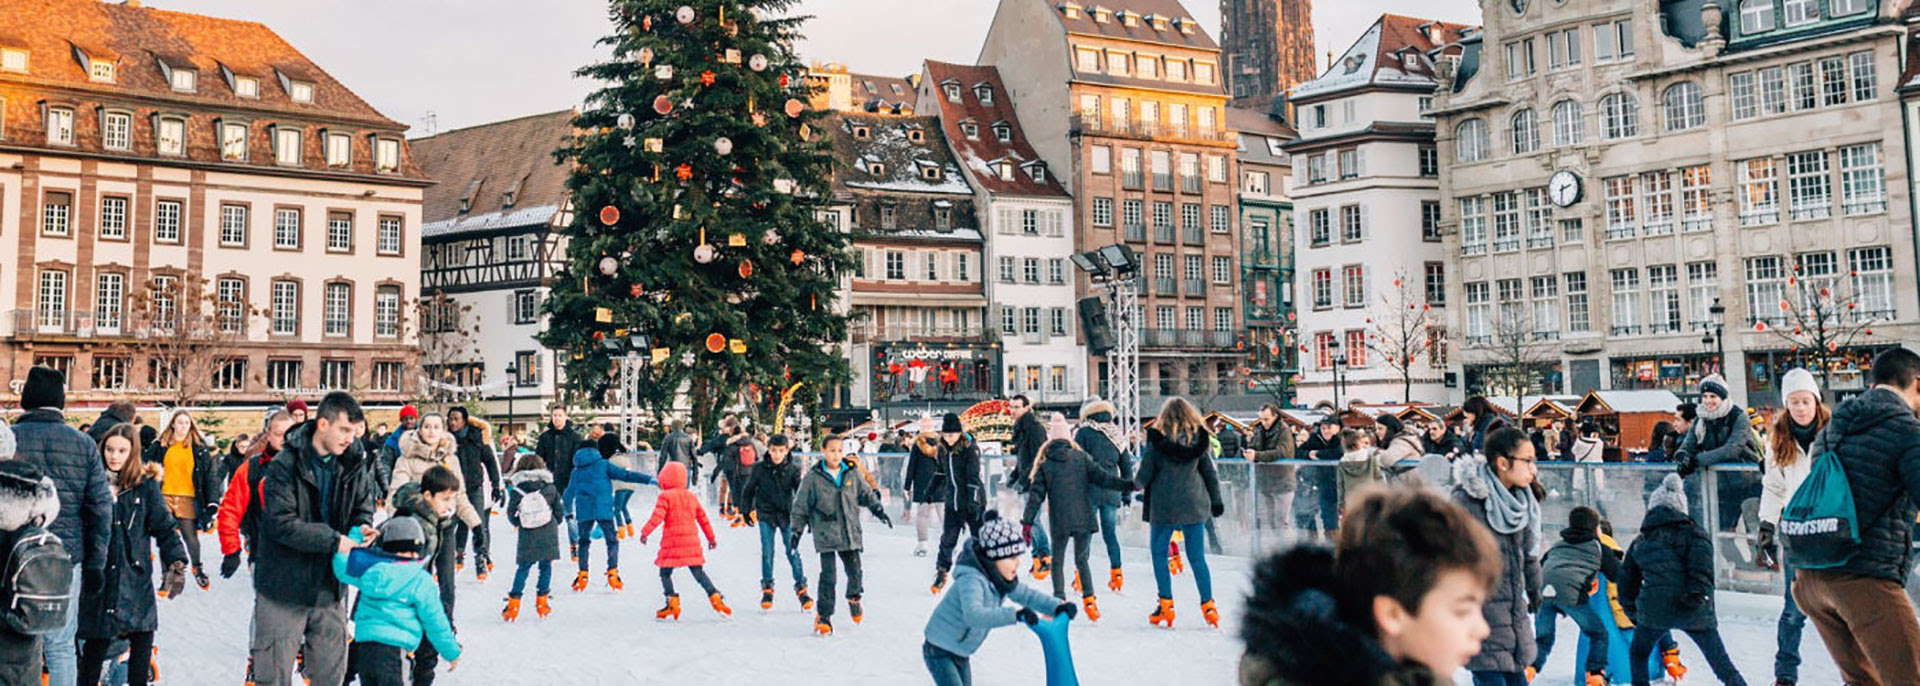 Mercado de Navidad de Estrasburgo, Francia.  La primera edición tuvo lugar en 1570